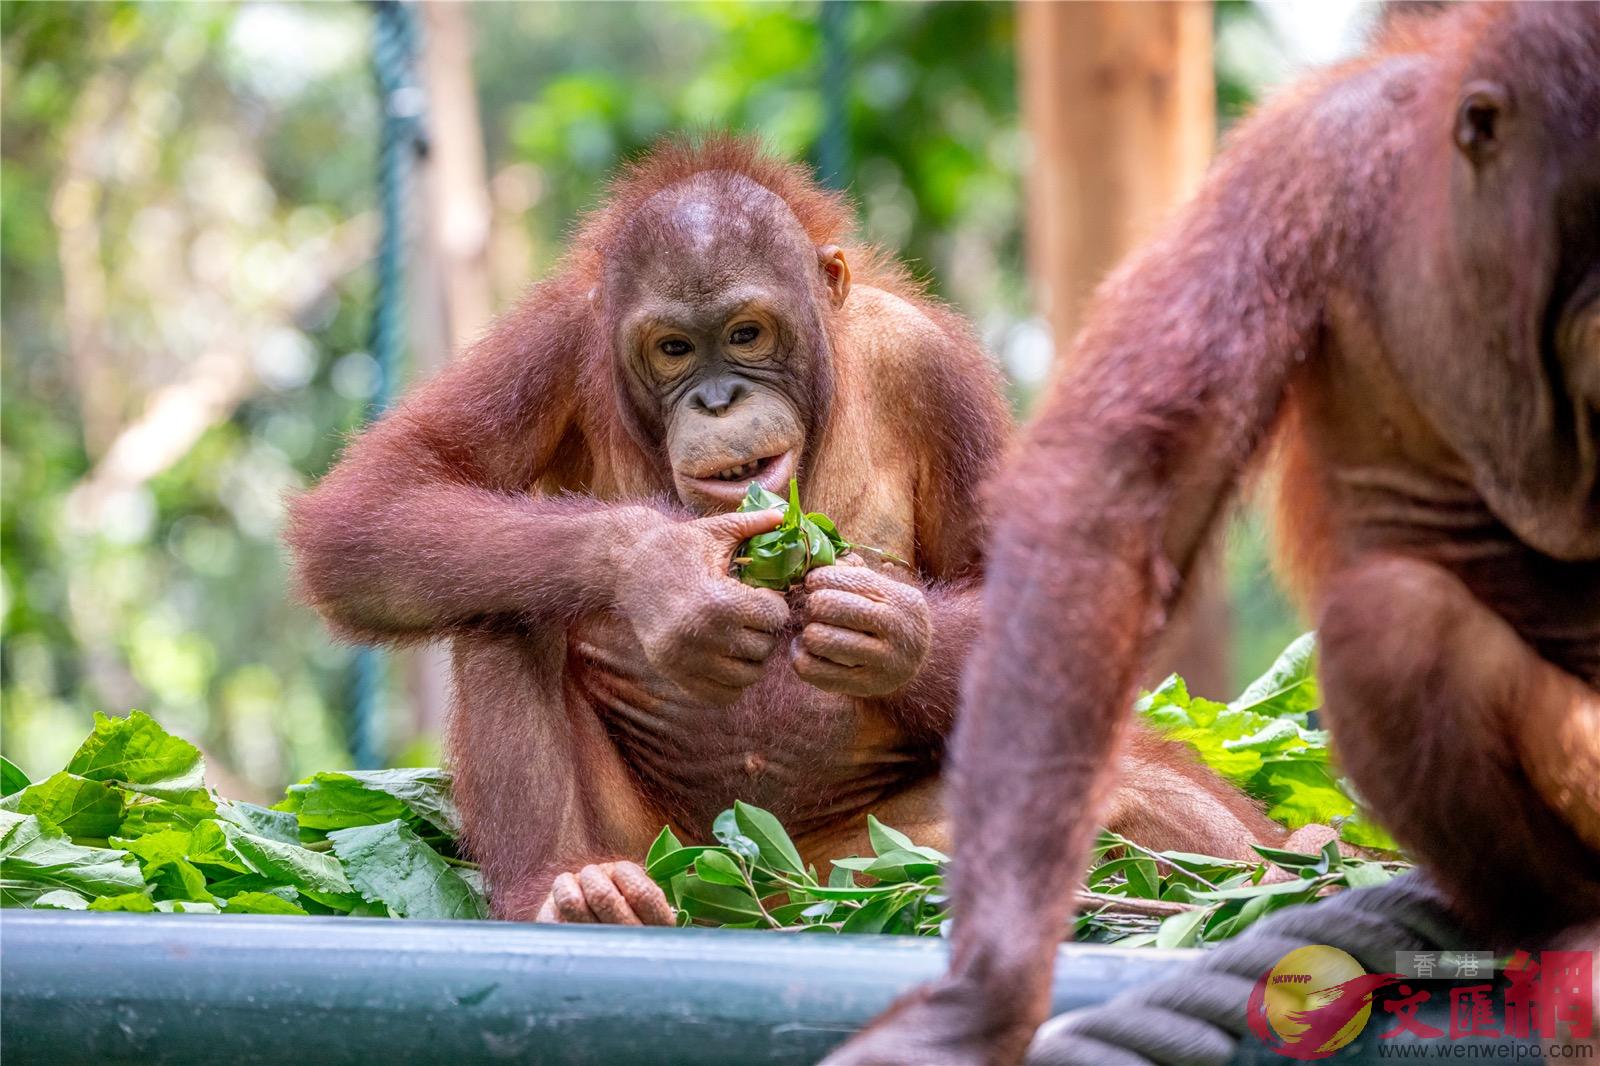 黃猩猩最愛有蘋果B香蕉B胡蘿蔔為餡的蔬果粽子]記者 胡若璋攝^